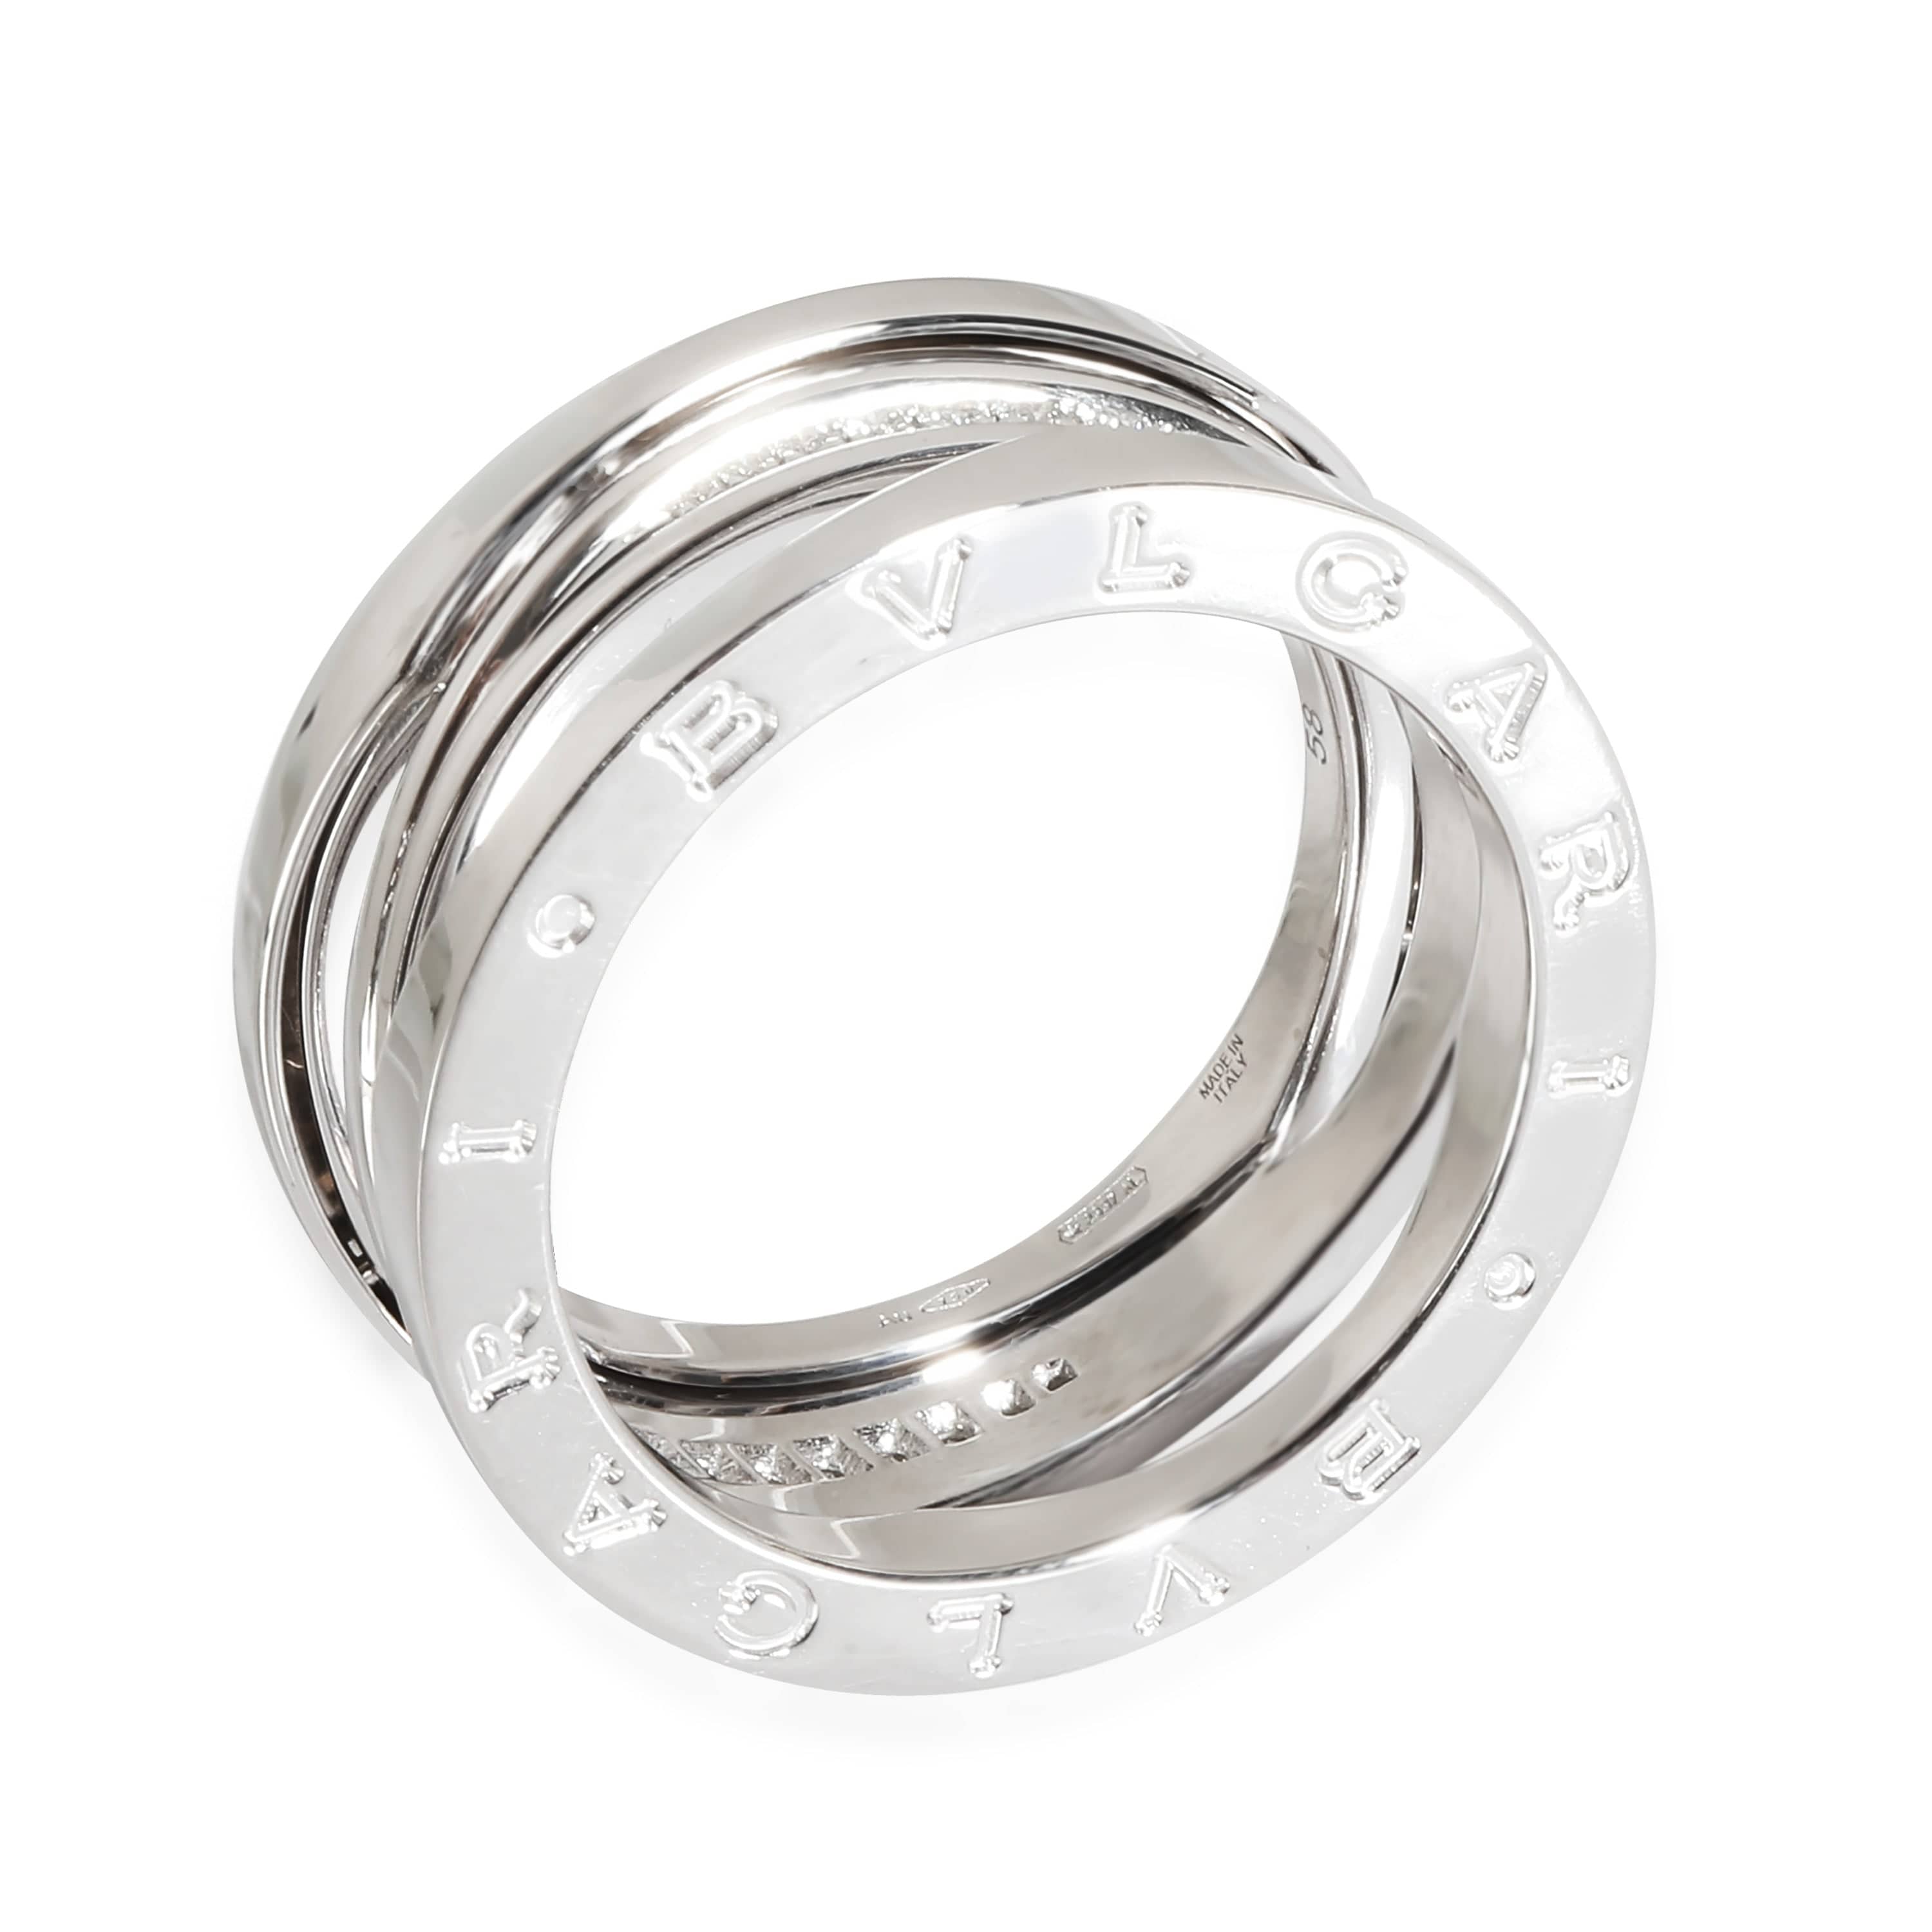 BVLGARI BVLGARI B.zero 1 Legend Diamond Ring in 18k White Gold 0.16 CTW